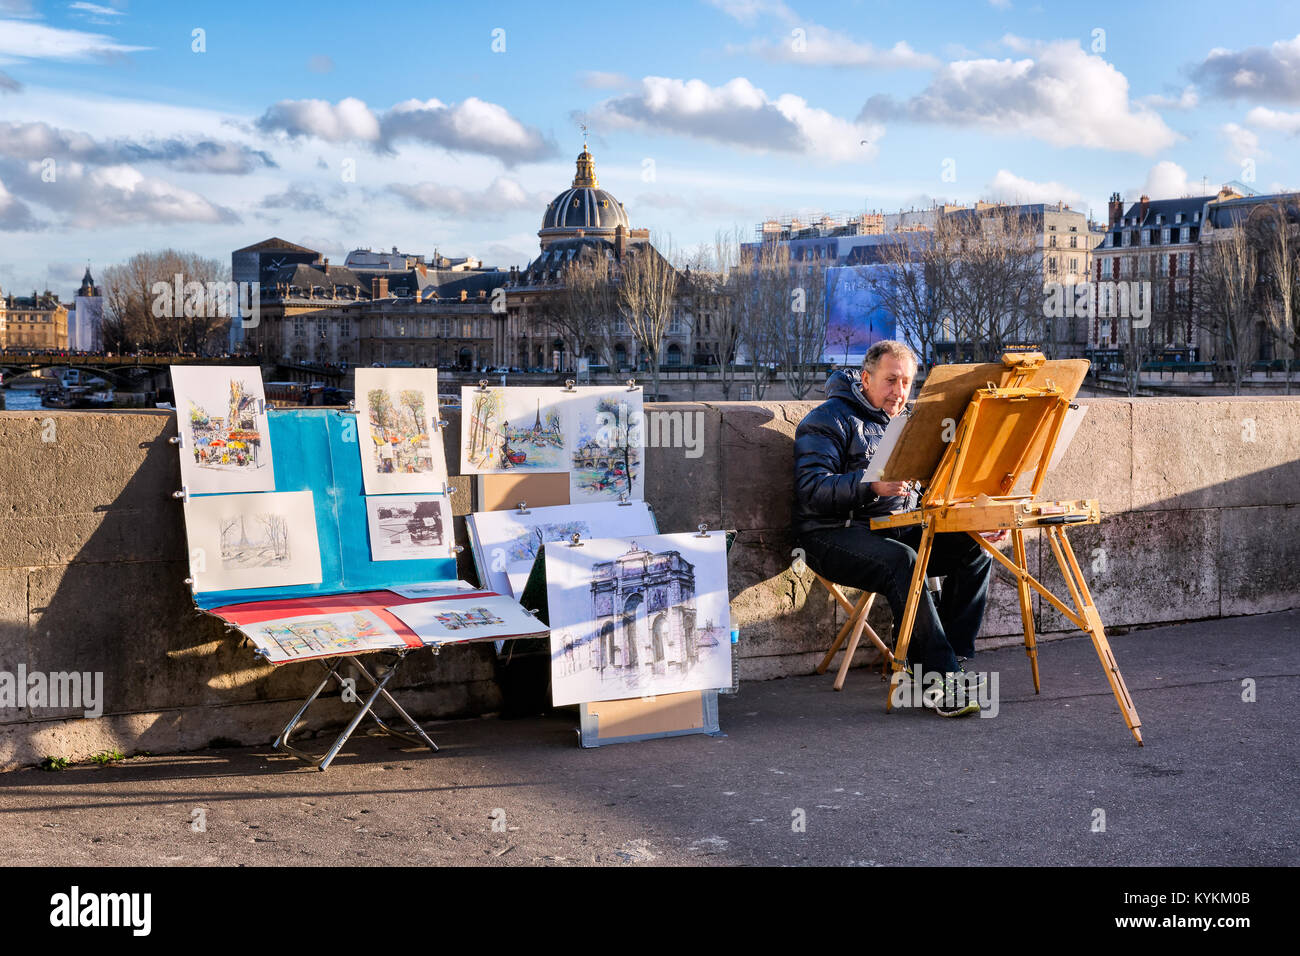 PARIS-JAN 2, 2014 : Un peintre non identifié au travail avec son chevalet et d'une exposition de ses oeuvres à vendre sur Pont Neuf, le plus vieux pont sur la Seine. H Banque D'Images